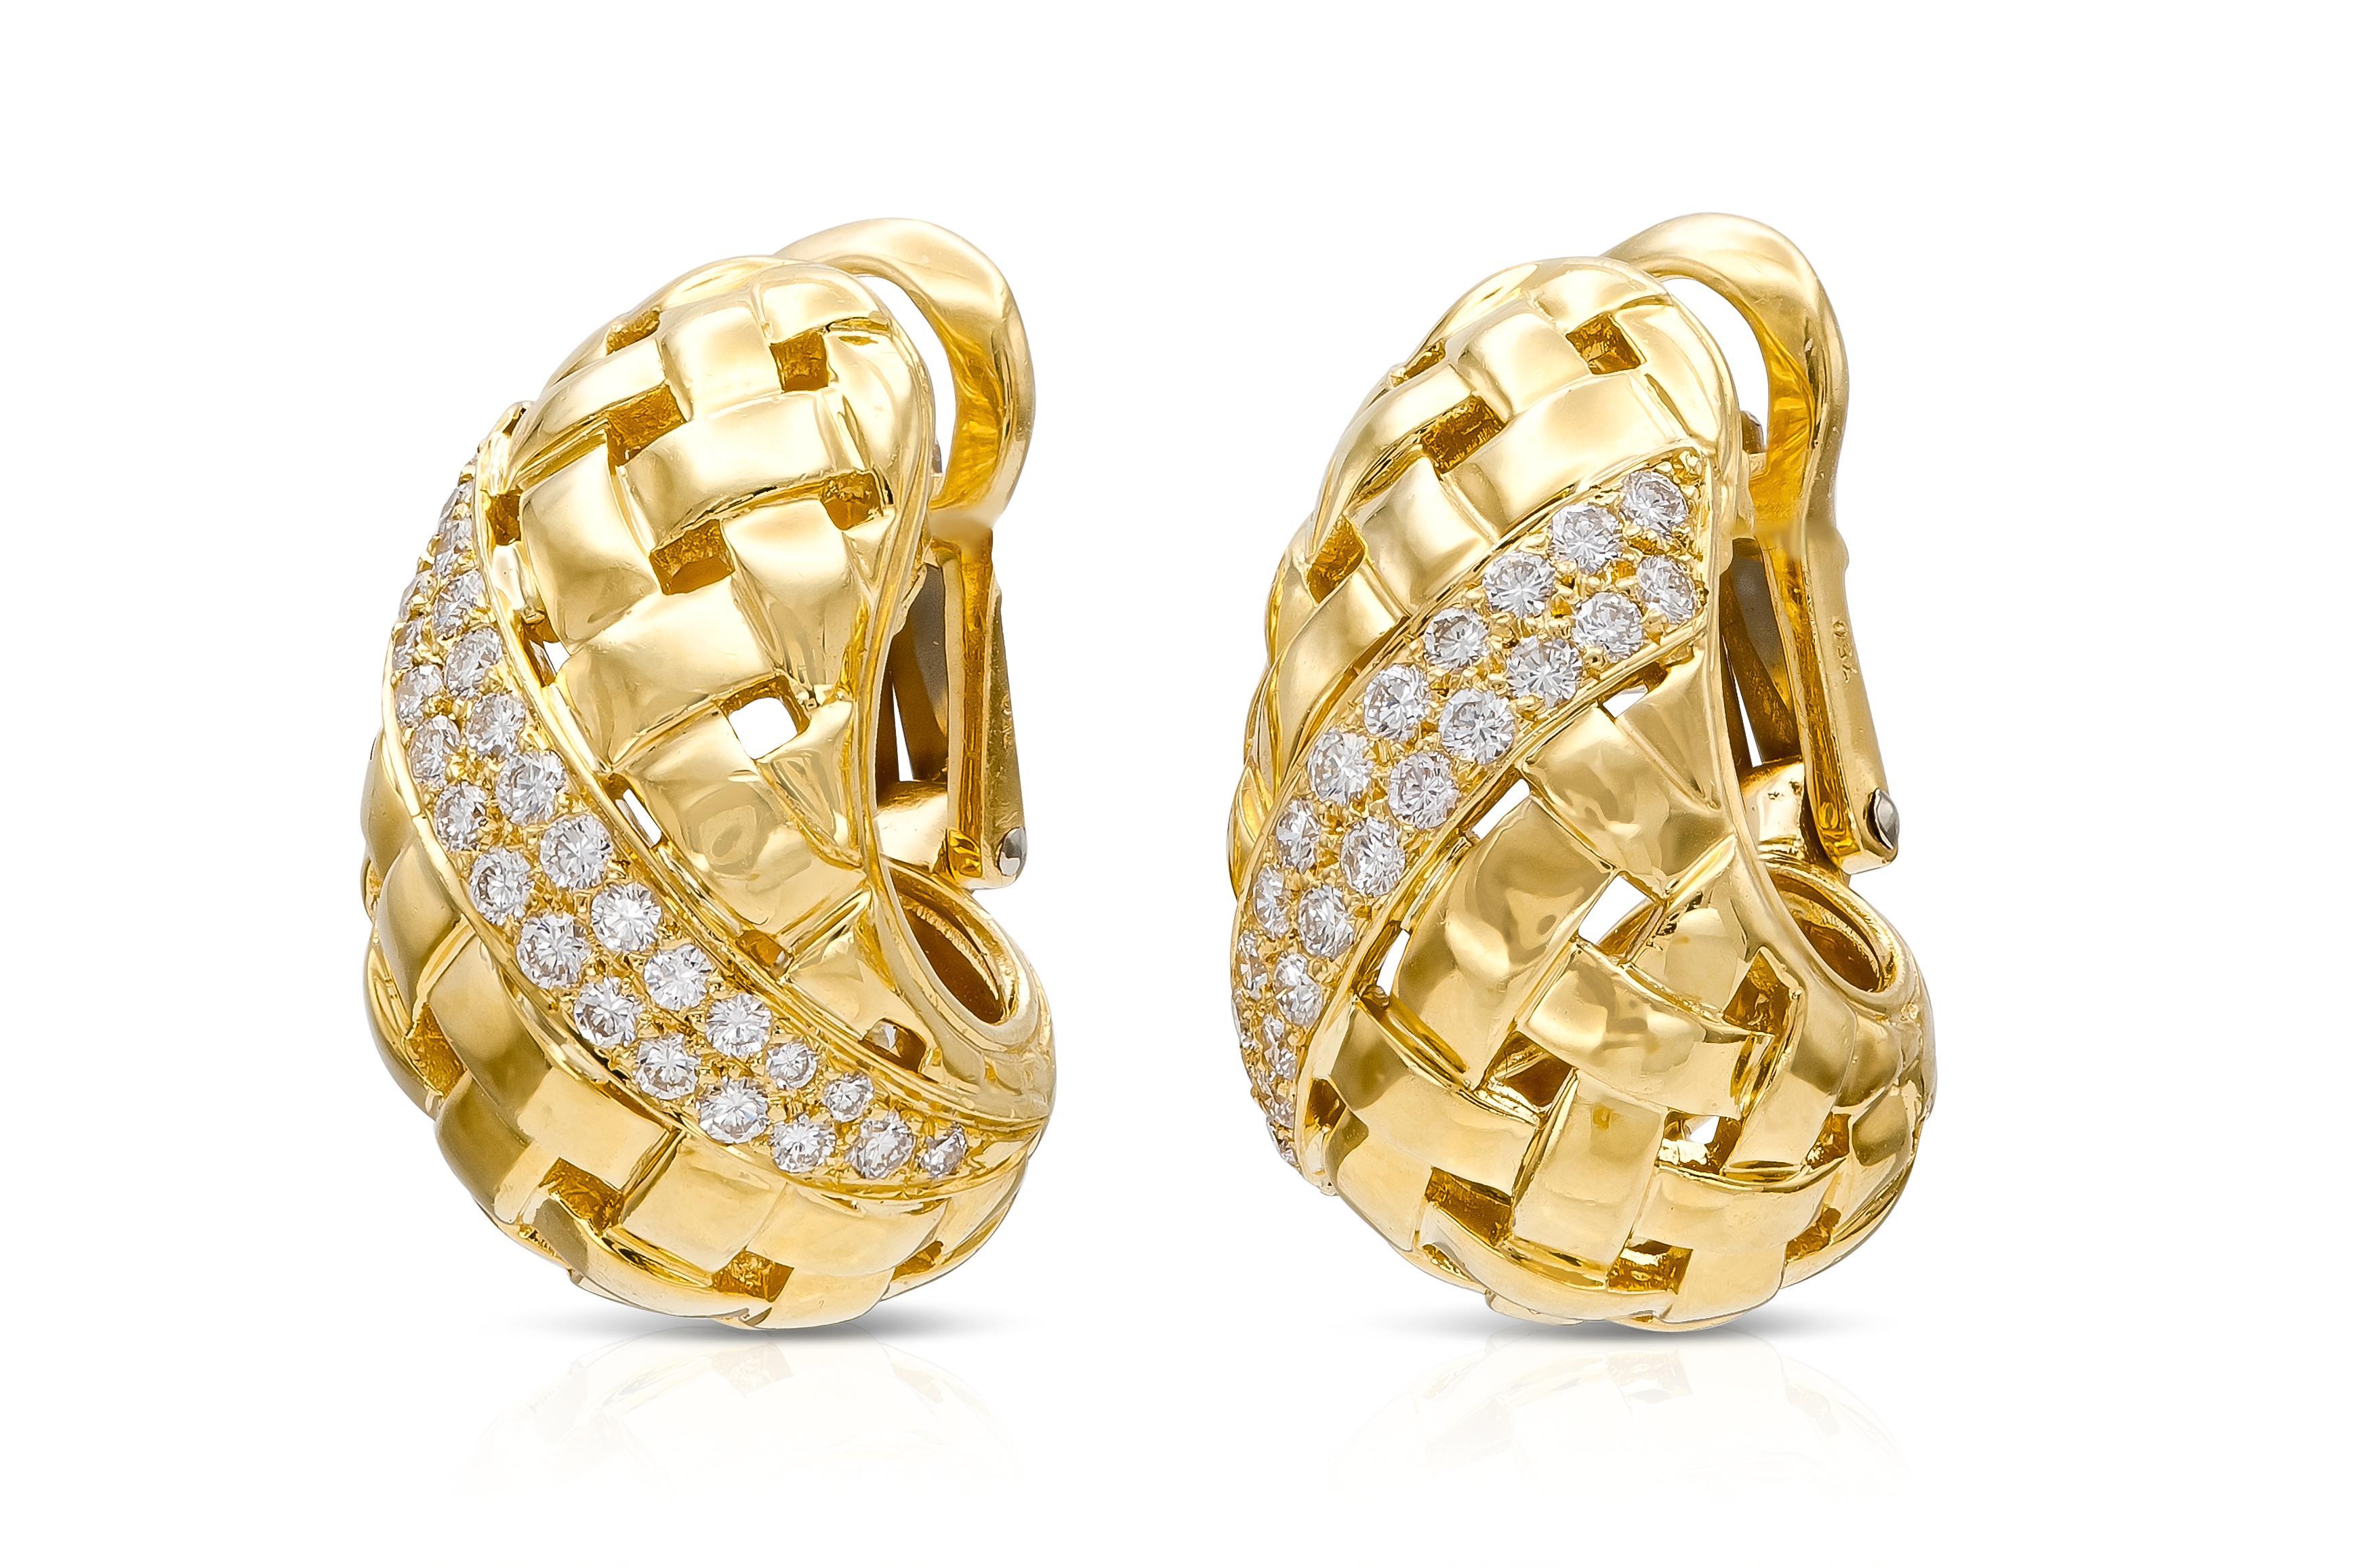 Fein gearbeitet in 18 Karat Gelbgold mit runden Diamanten im Brillantschliff mit einem Gesamtgewicht von 1,32 Karat.
Signiert von Tiffany & Co.
Ca. 1989